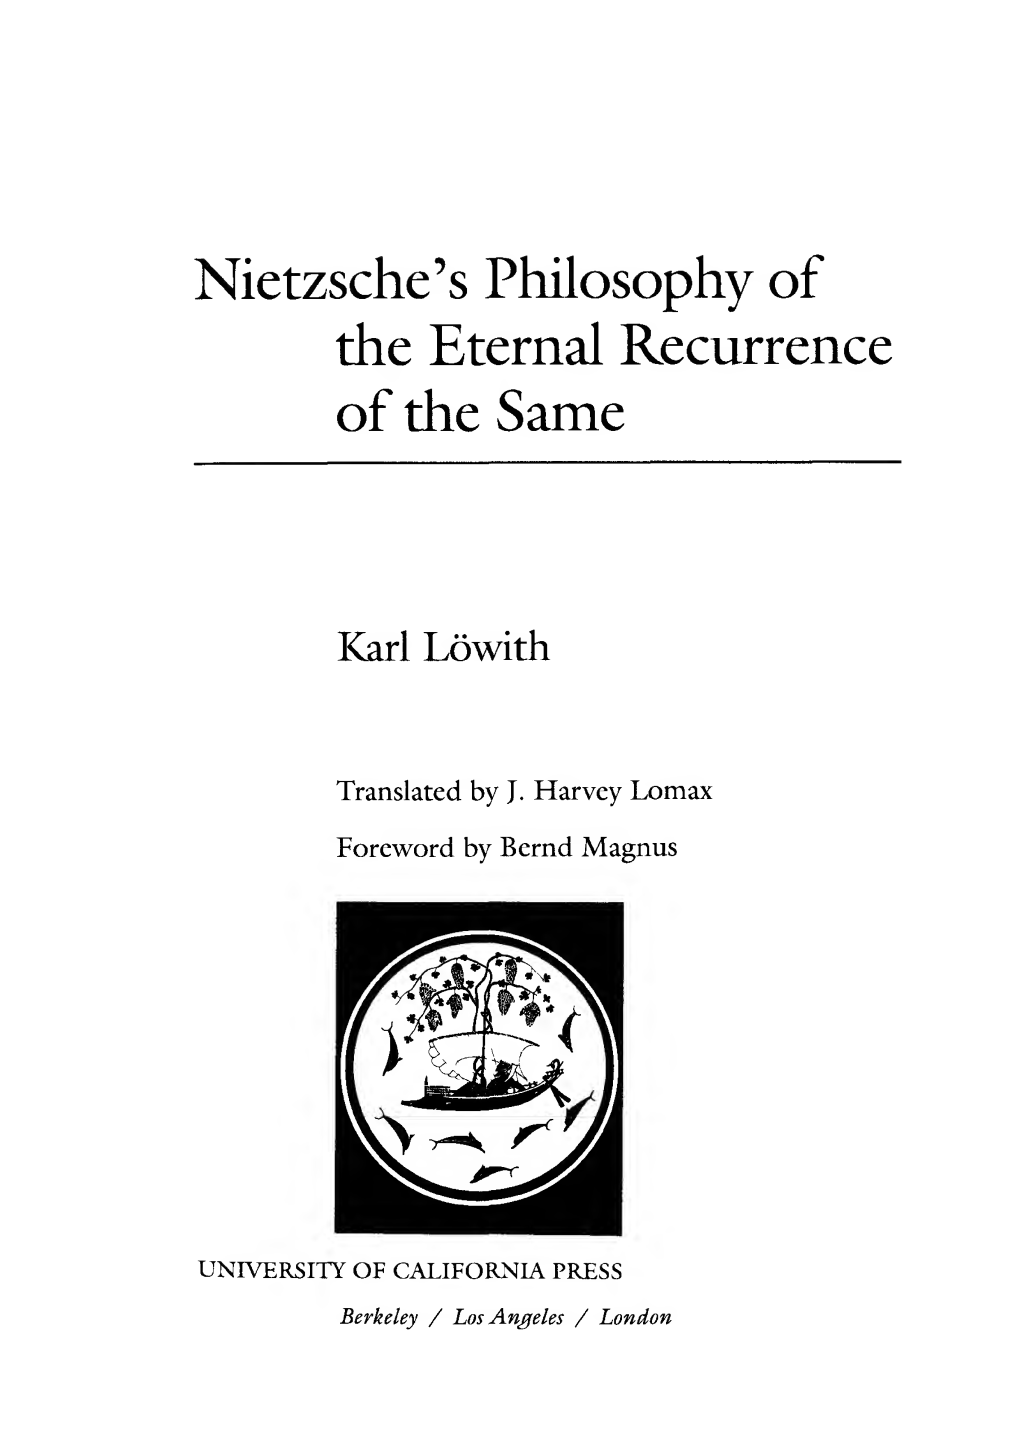 Karl Lowith: Nietzsche's Philosophy of Eternal Recurrence